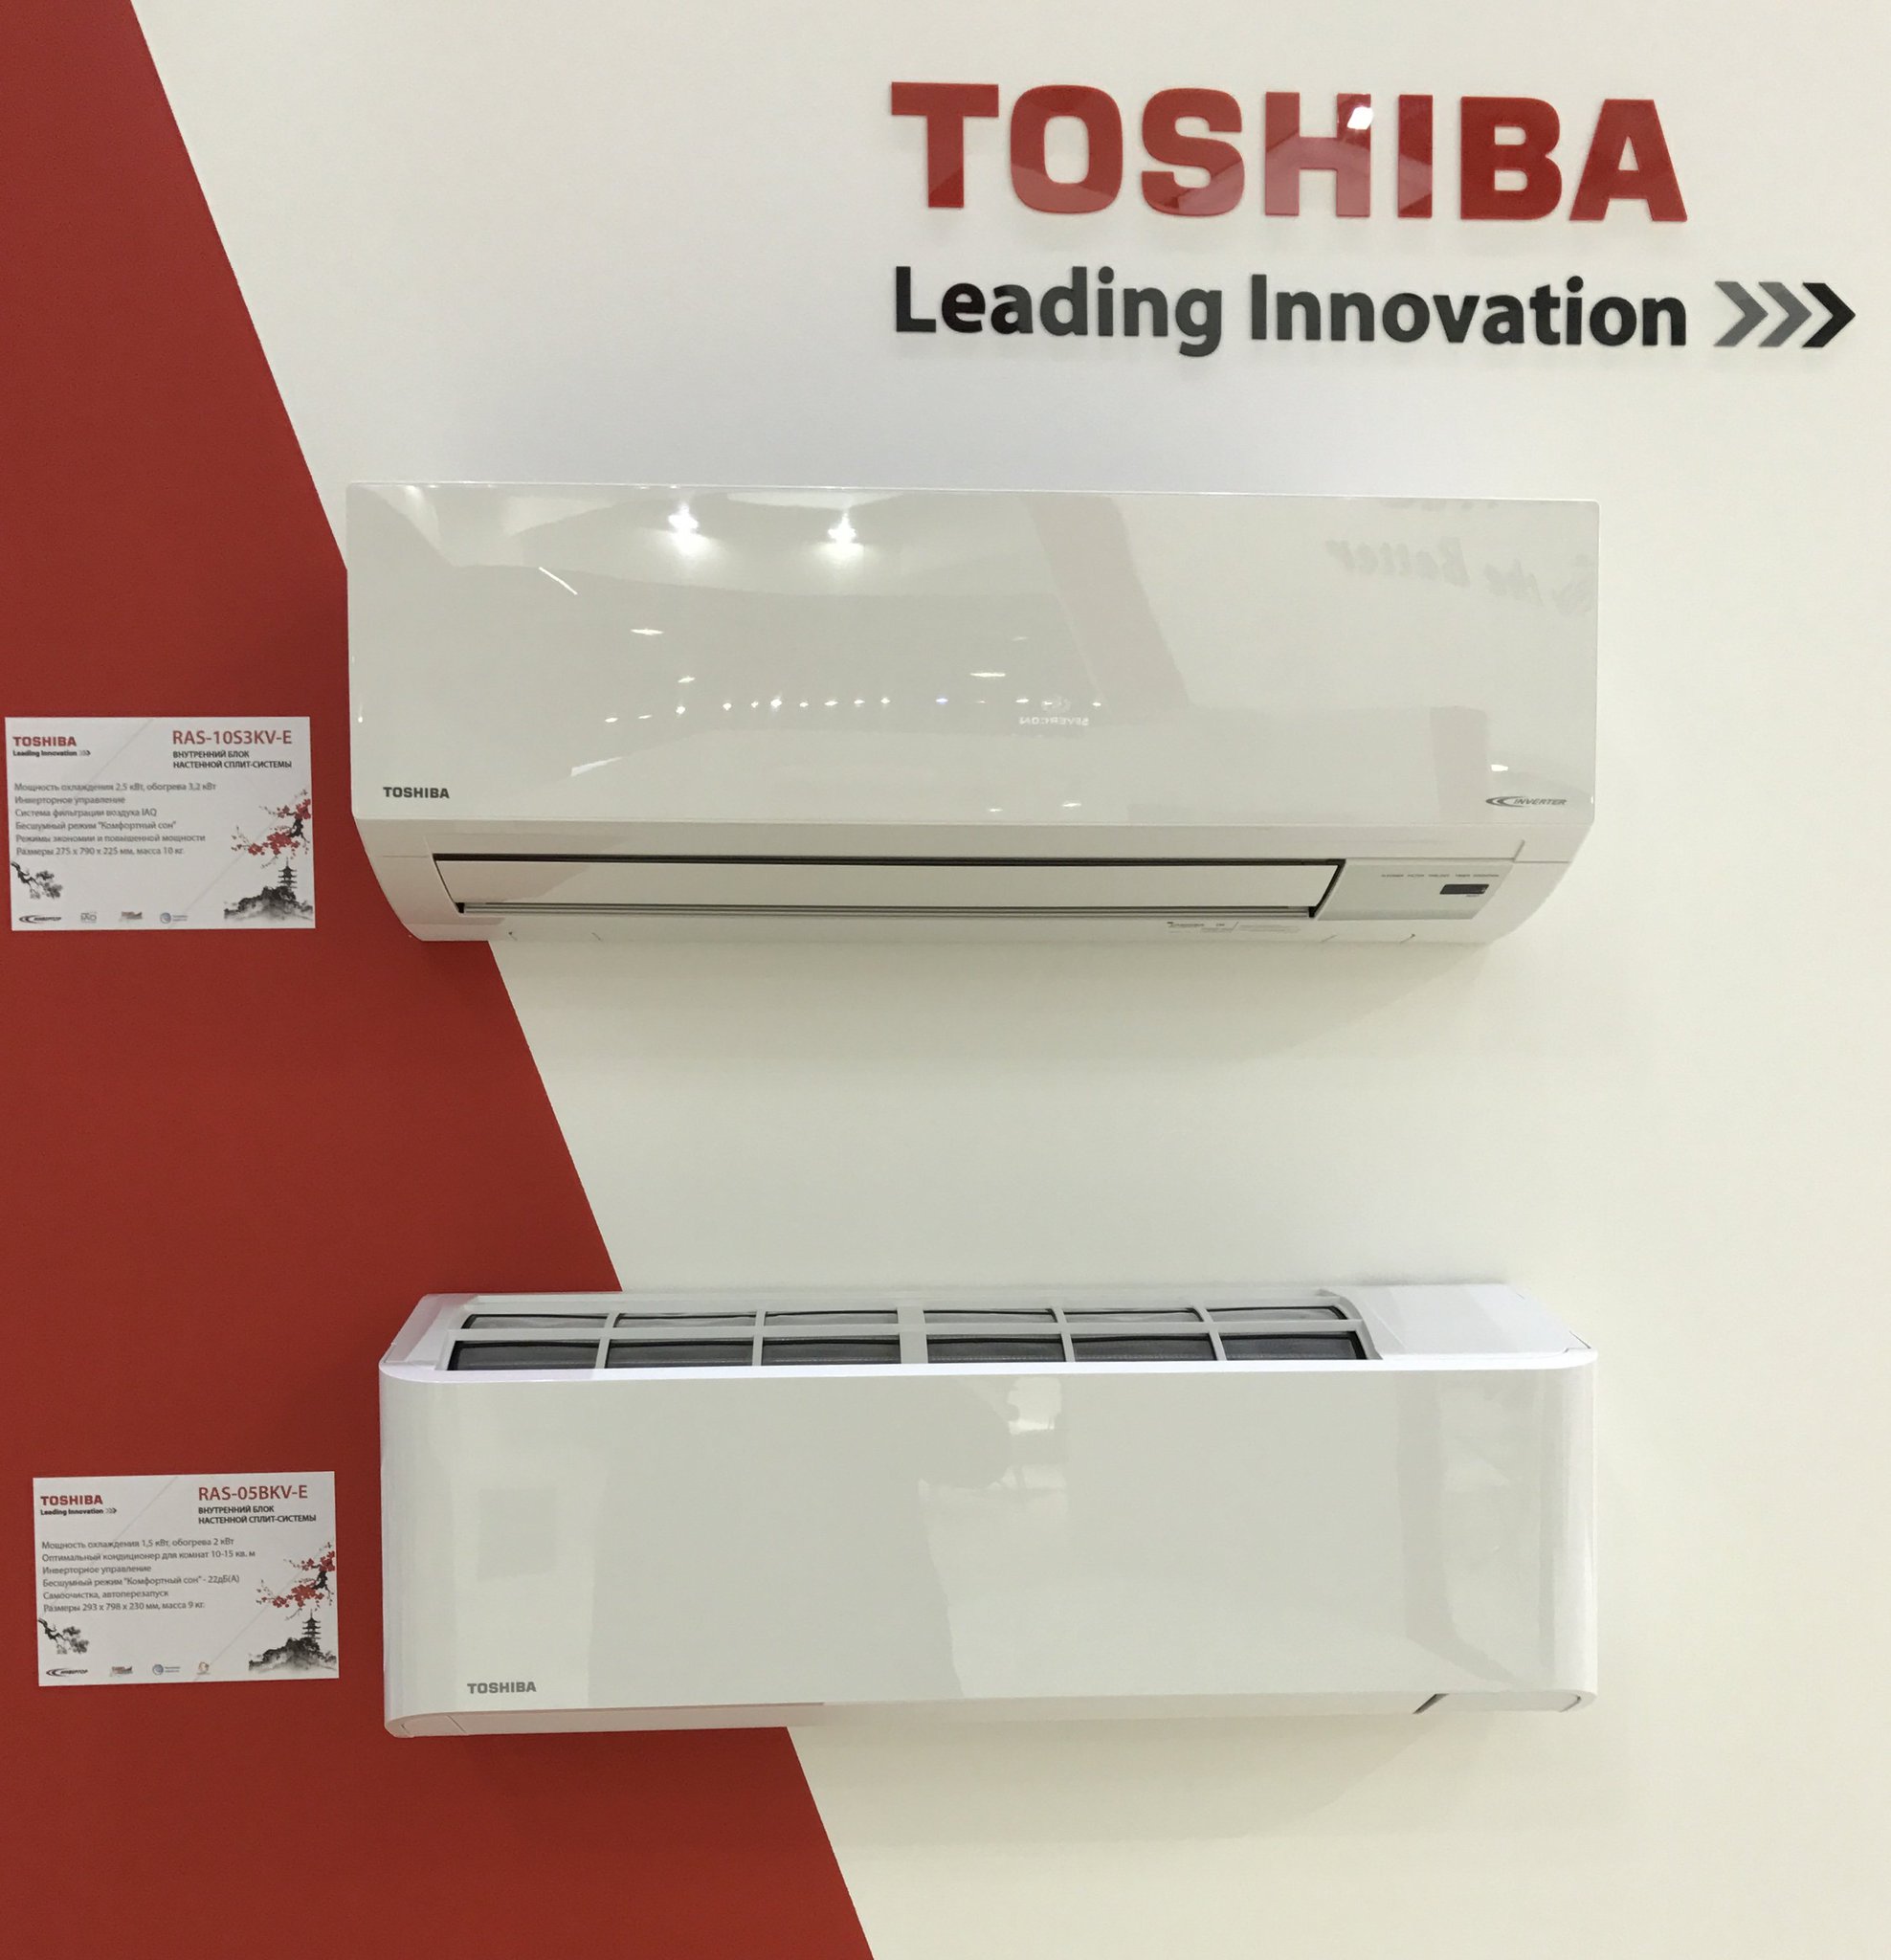 Покупка кондиционеров Toshiba (Тошиба) по выгодной цене: отзывы о конкретных моделях